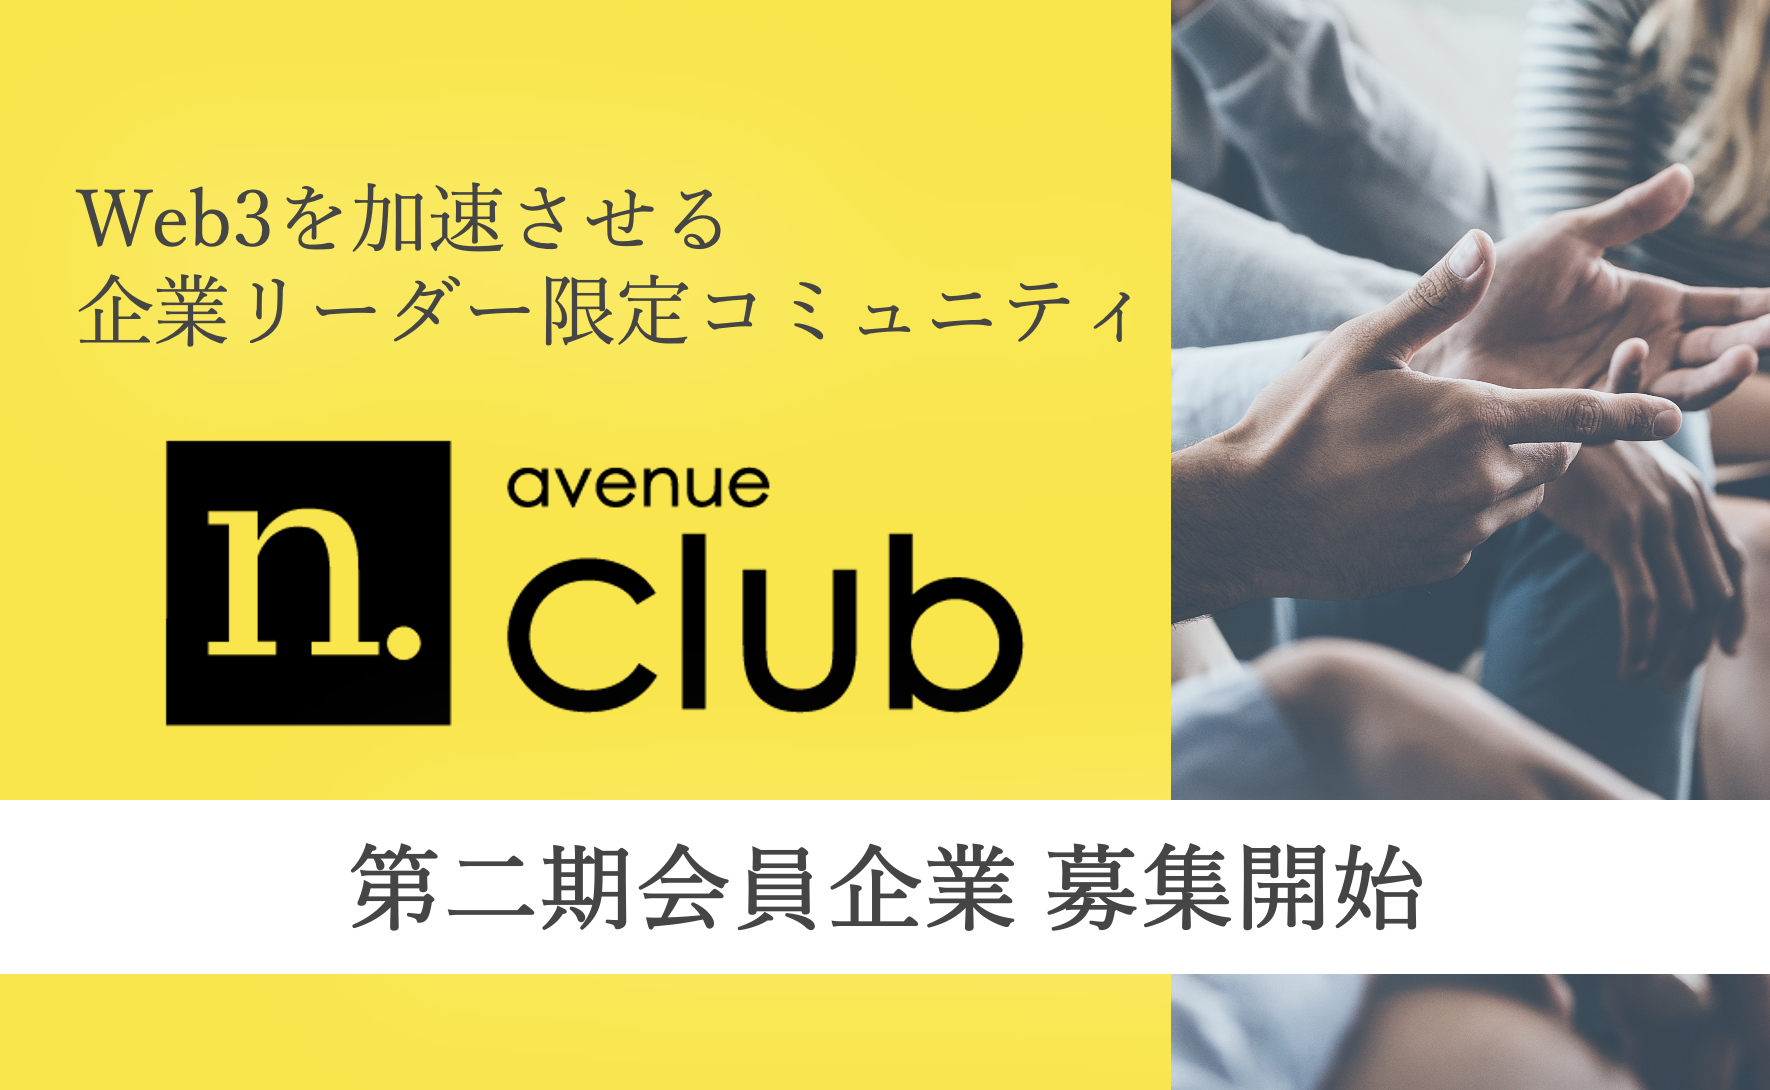 法人向けWeb3コミュニティN.Avenue Clubの二期会員募集開始。